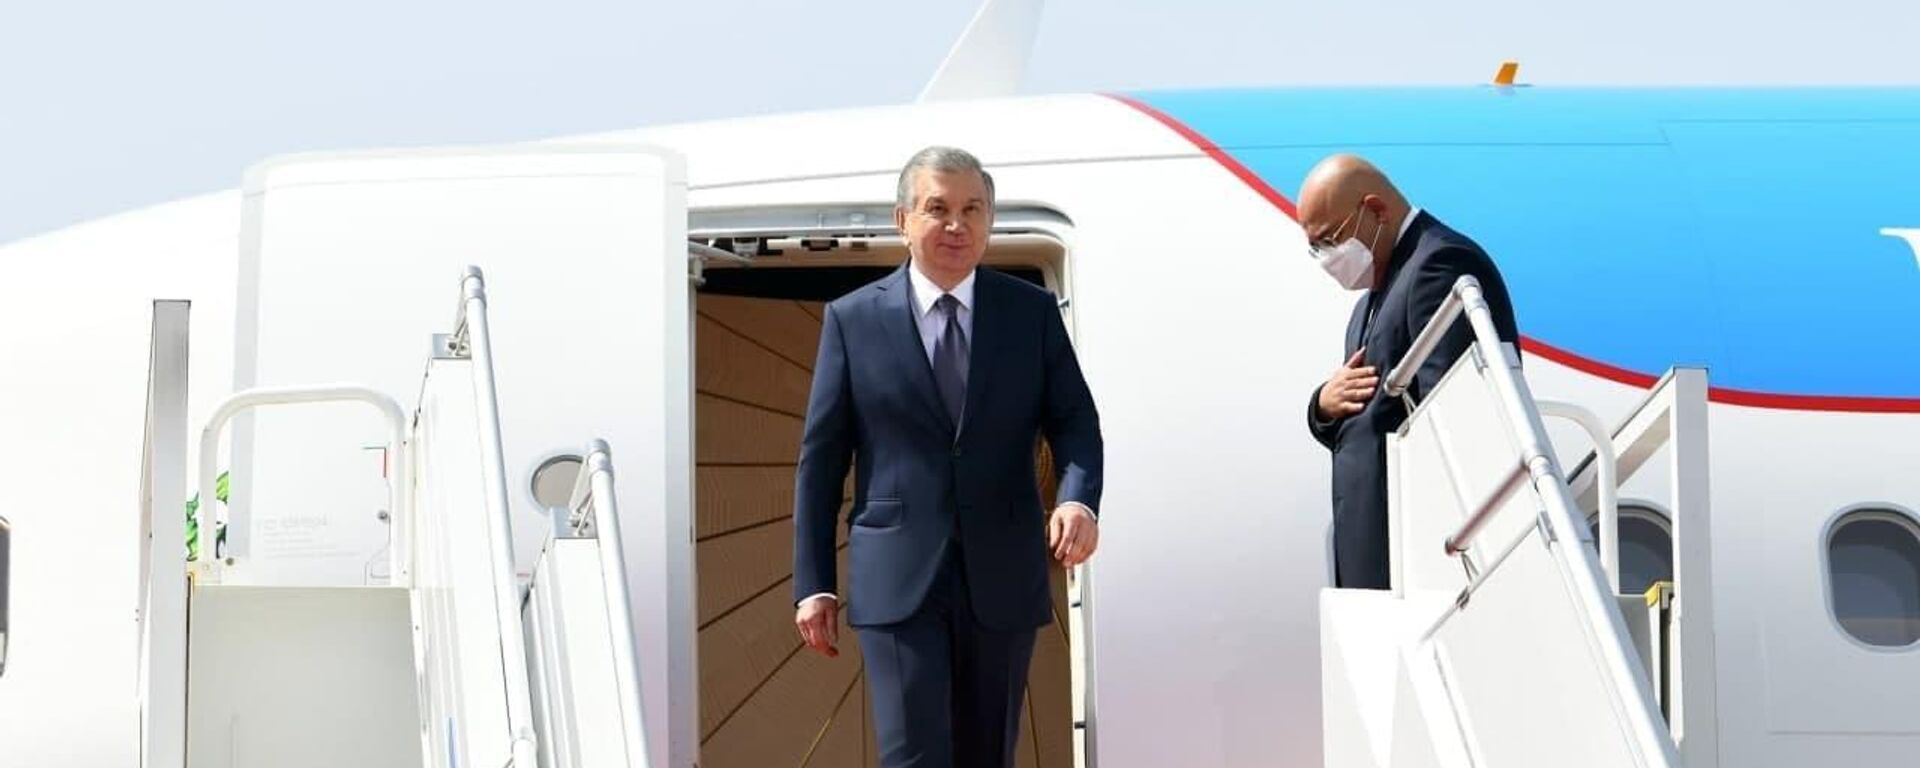 Президент Республики Узбекистан Шавкат Мирзиёев прибыл с официальным визитом в Республику Таджикистан - Sputnik Тоҷикистон, 1920, 19.11.2021